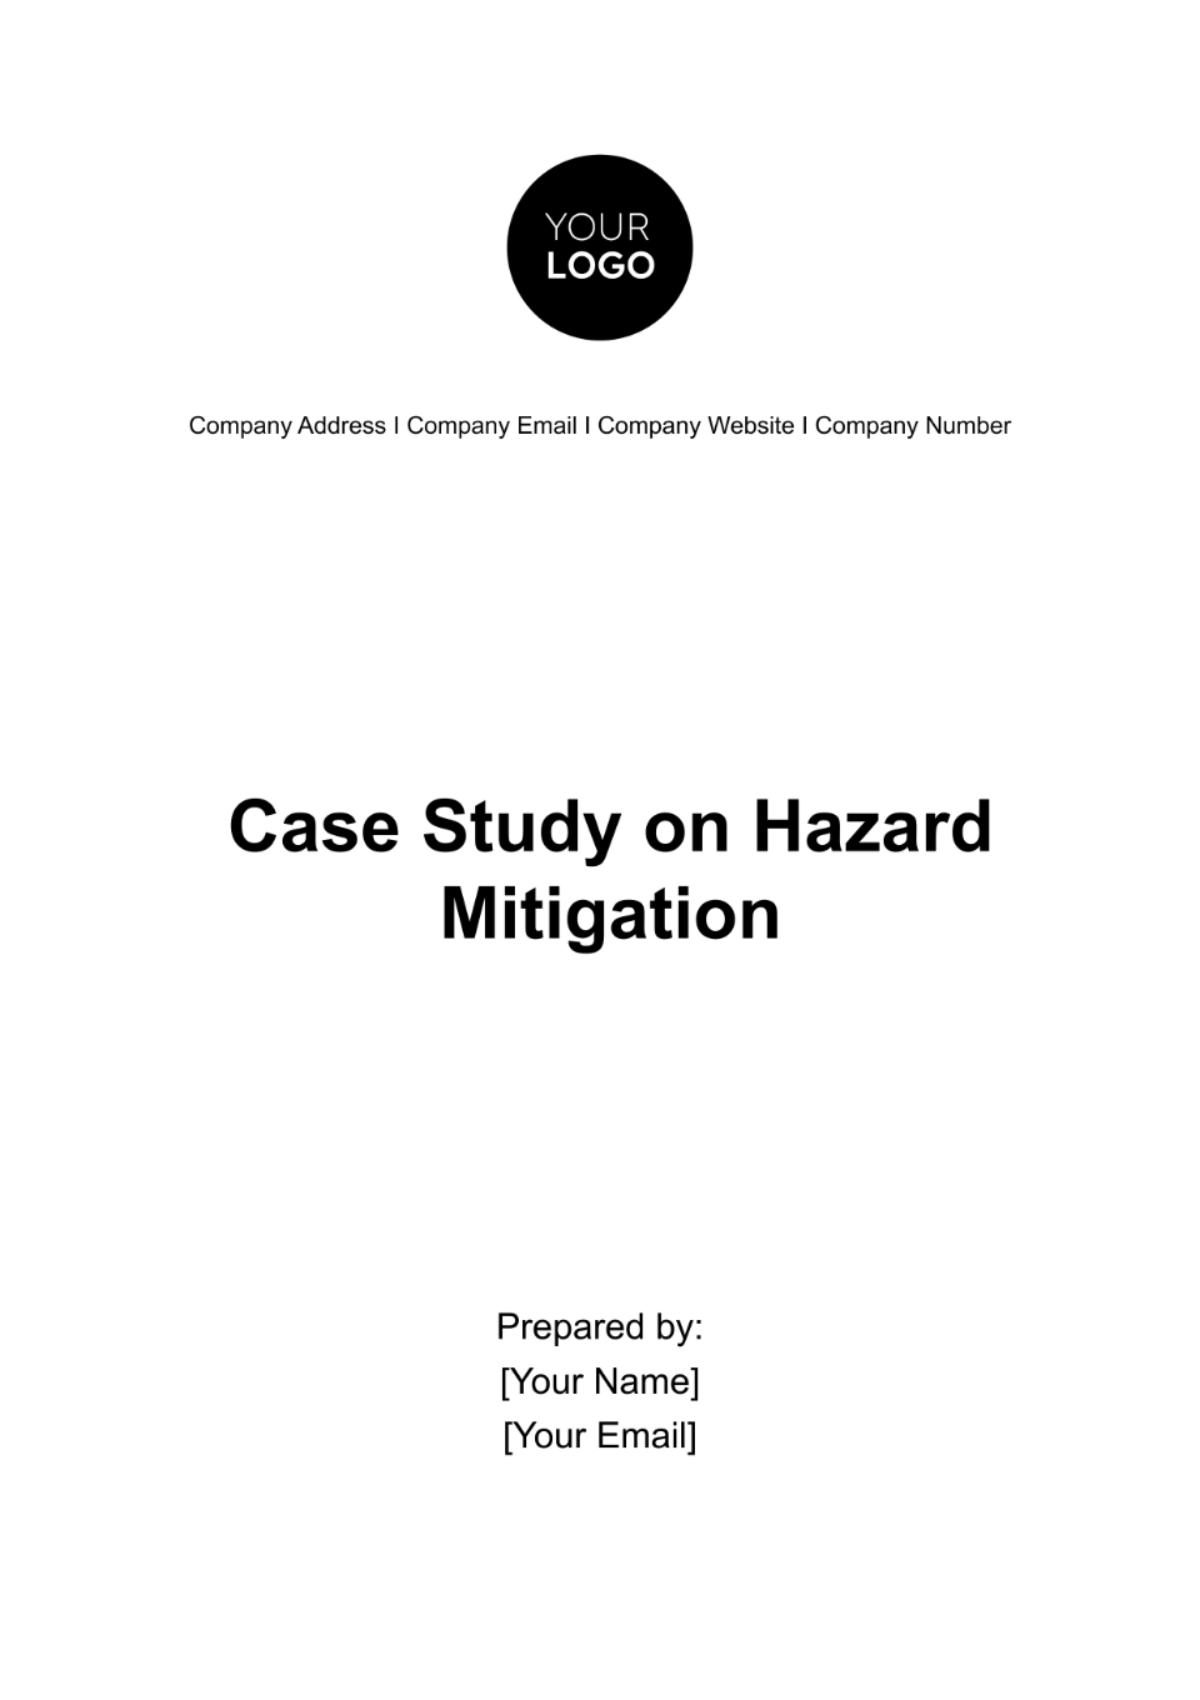 Case Study on Hazard Mitigation Template